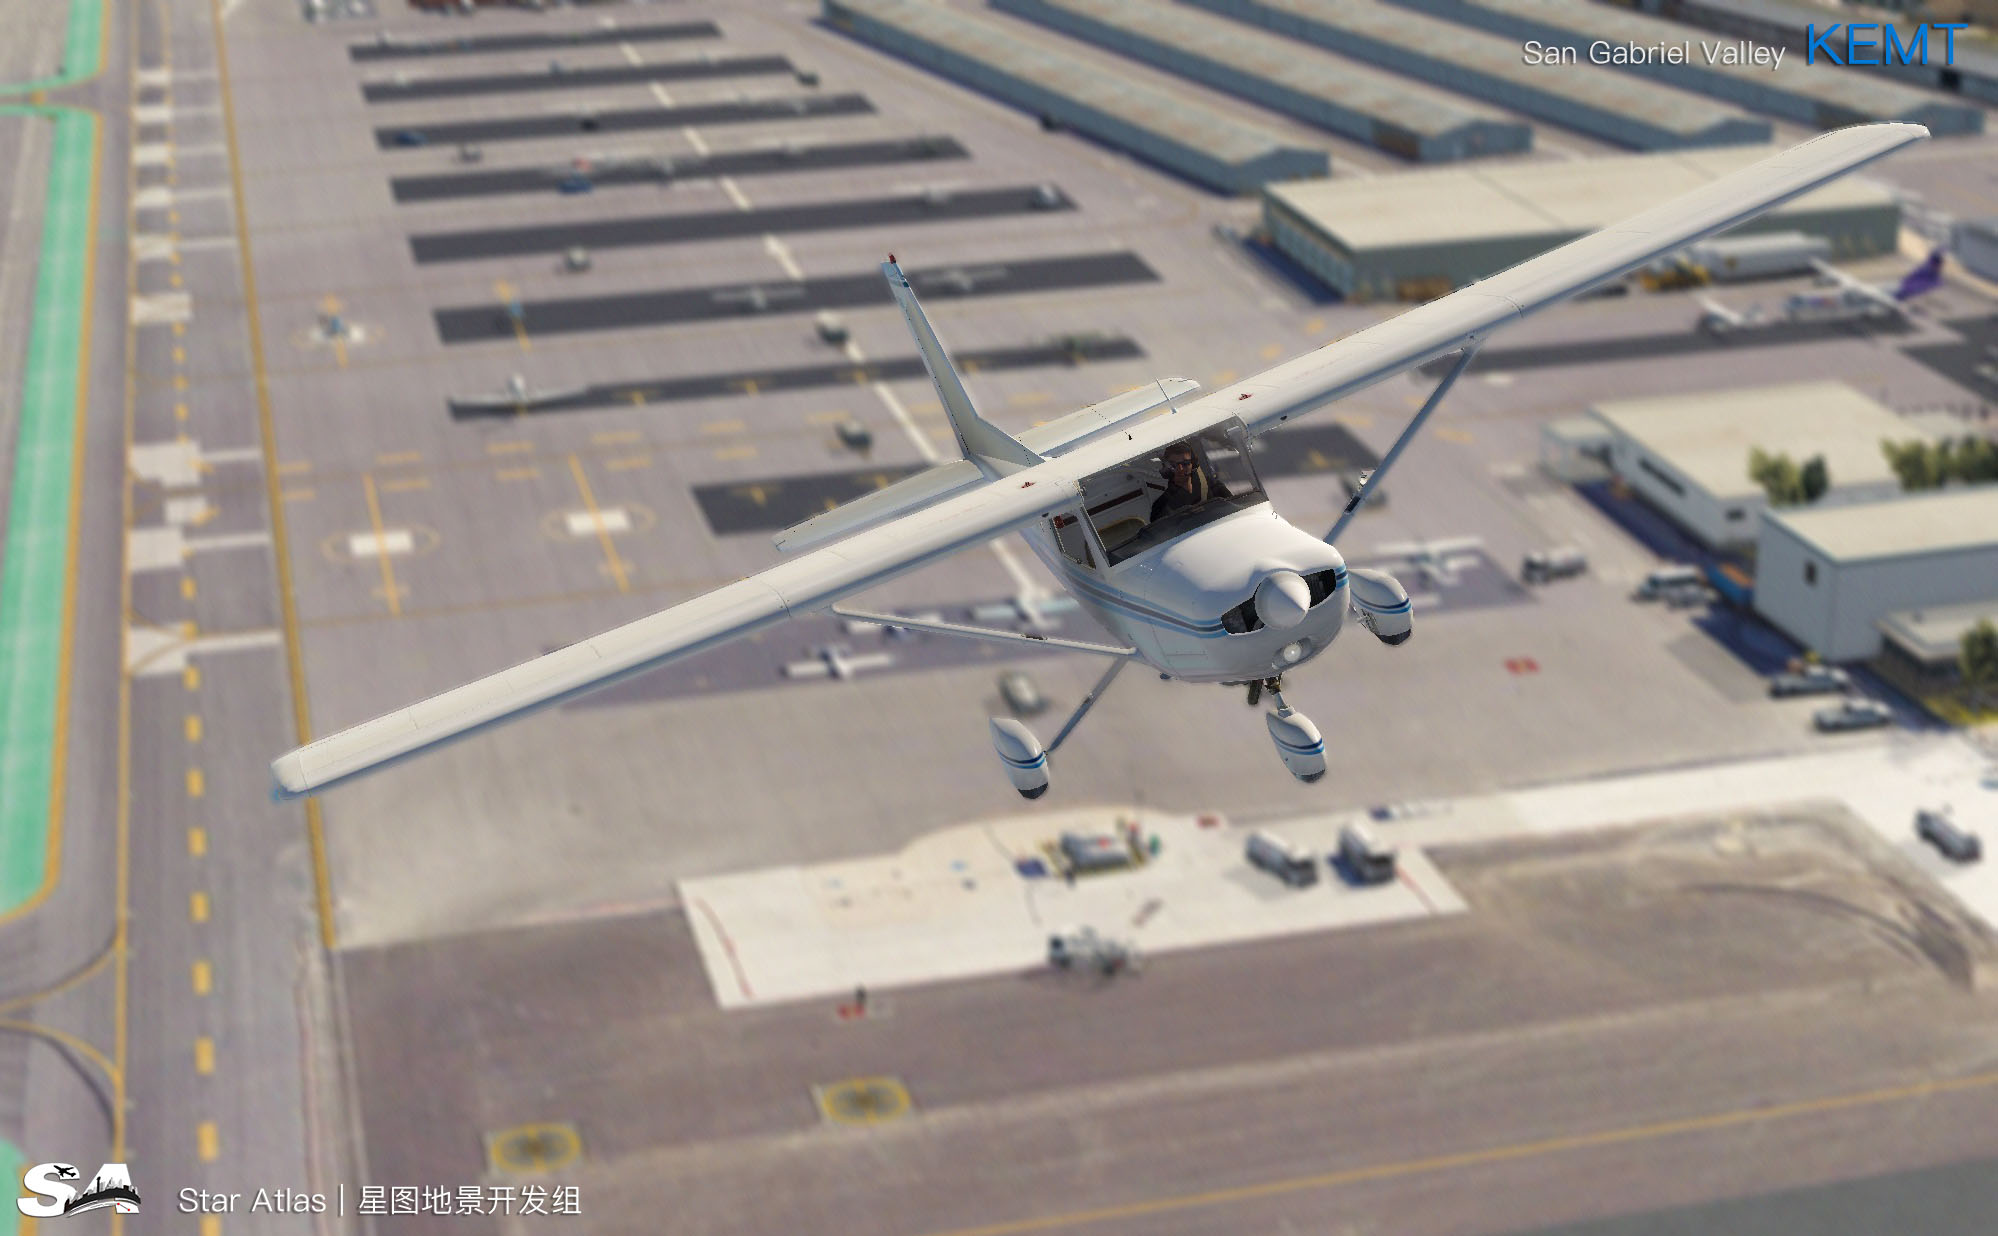 【X-Plane】KEMT-圣盖博谷机场 HD 1.0-3520 